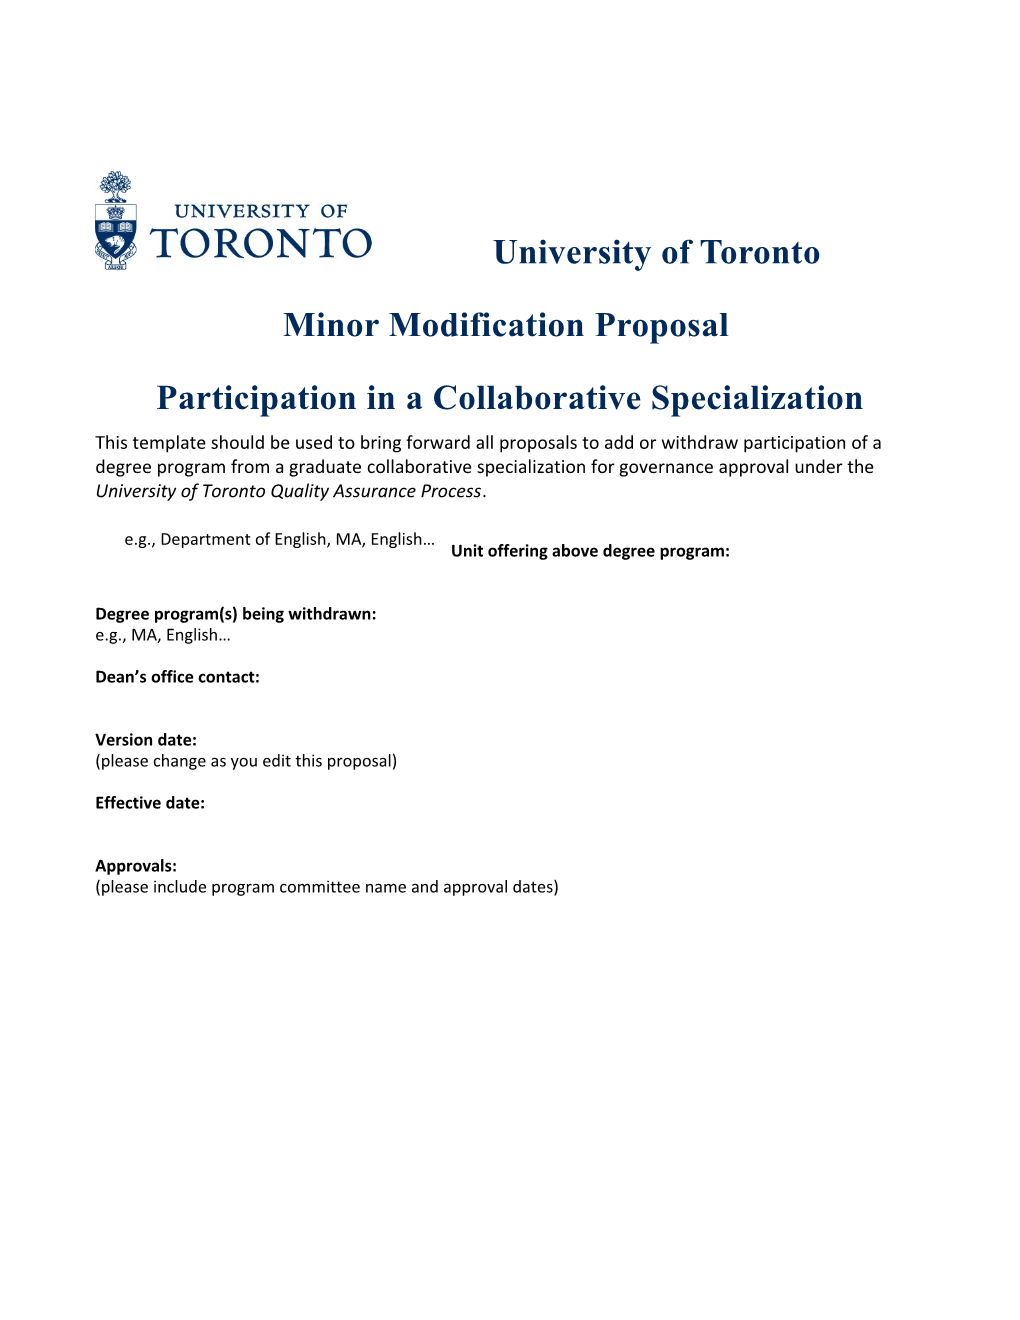 Minor Modification Proposal: Participation in a Collaborative Specialization